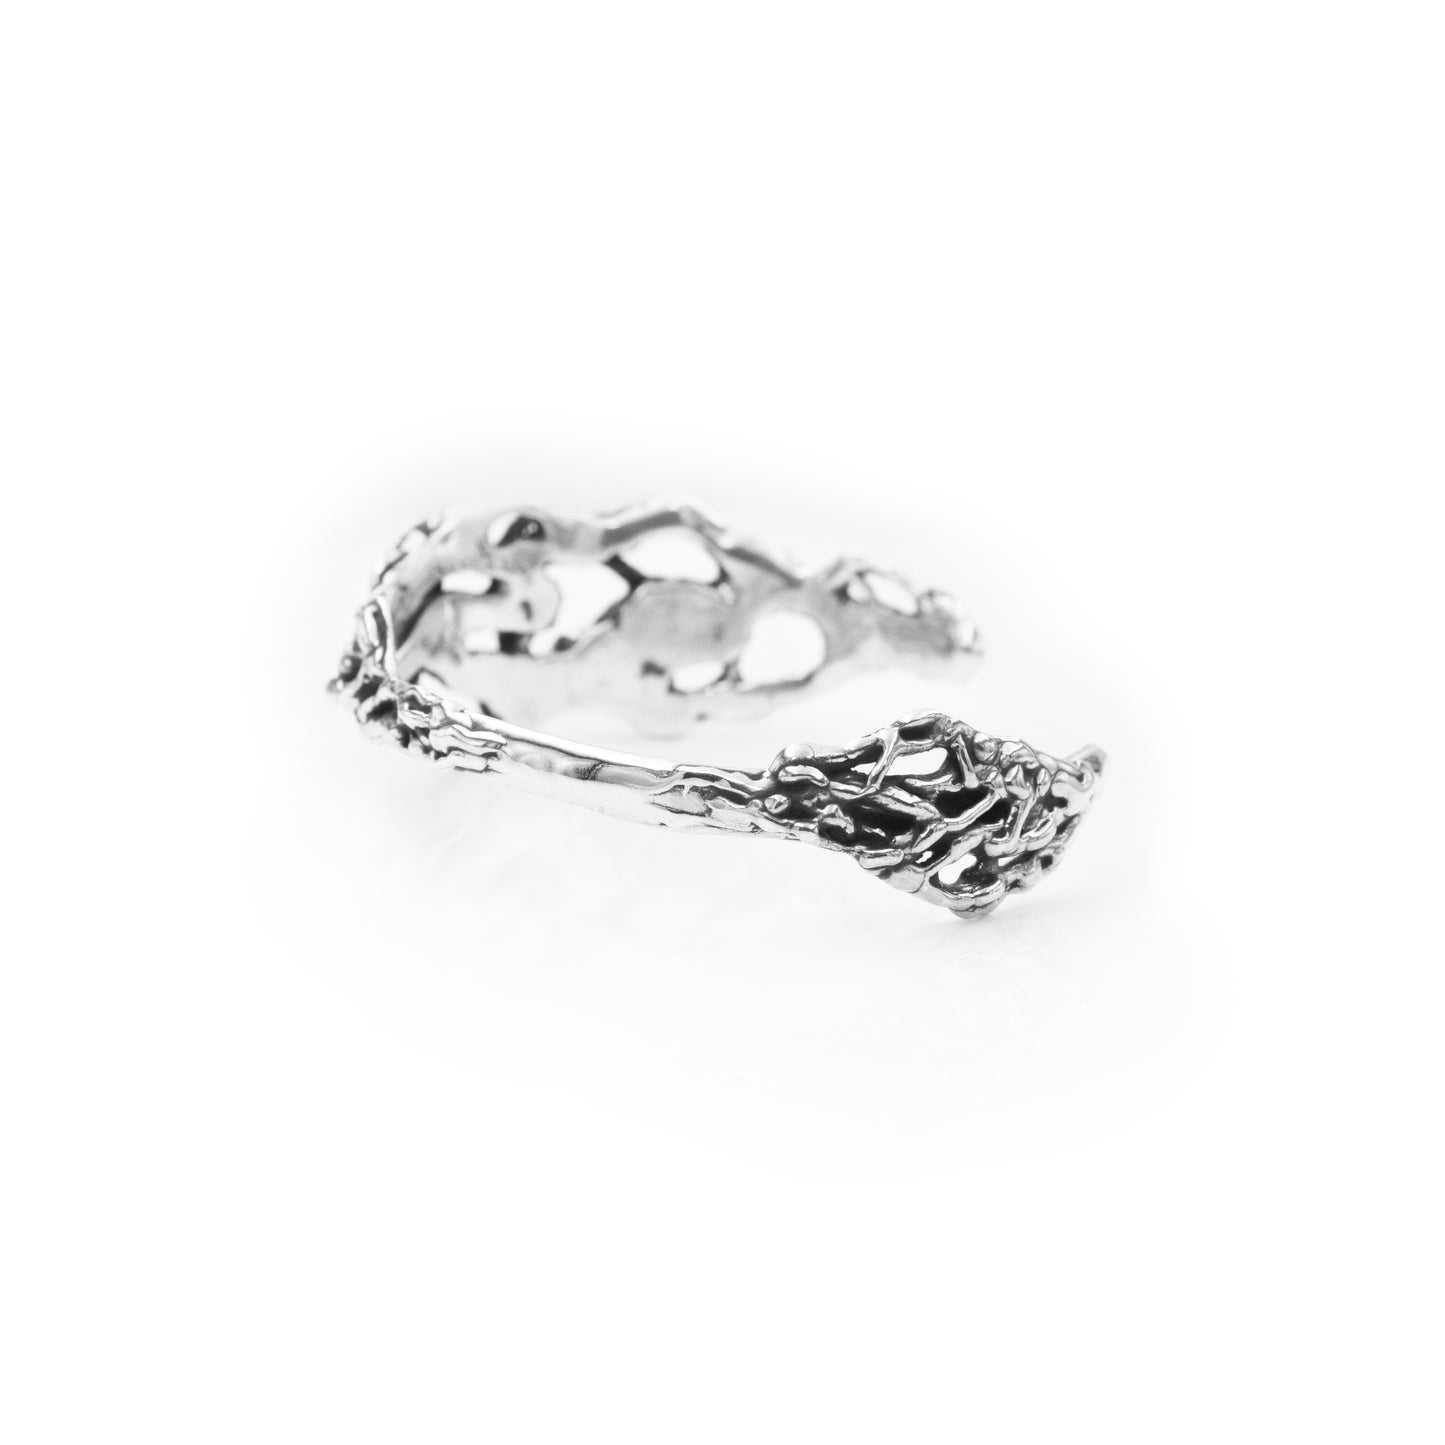 
                  
                    Aphrodite Cuff Bracelet - Spiritual Cuff Bracelet - Designer Jewelry - Statement Cuff Bracelet - Sterling Silver Cuff Bracelet - Free Form
                  
                